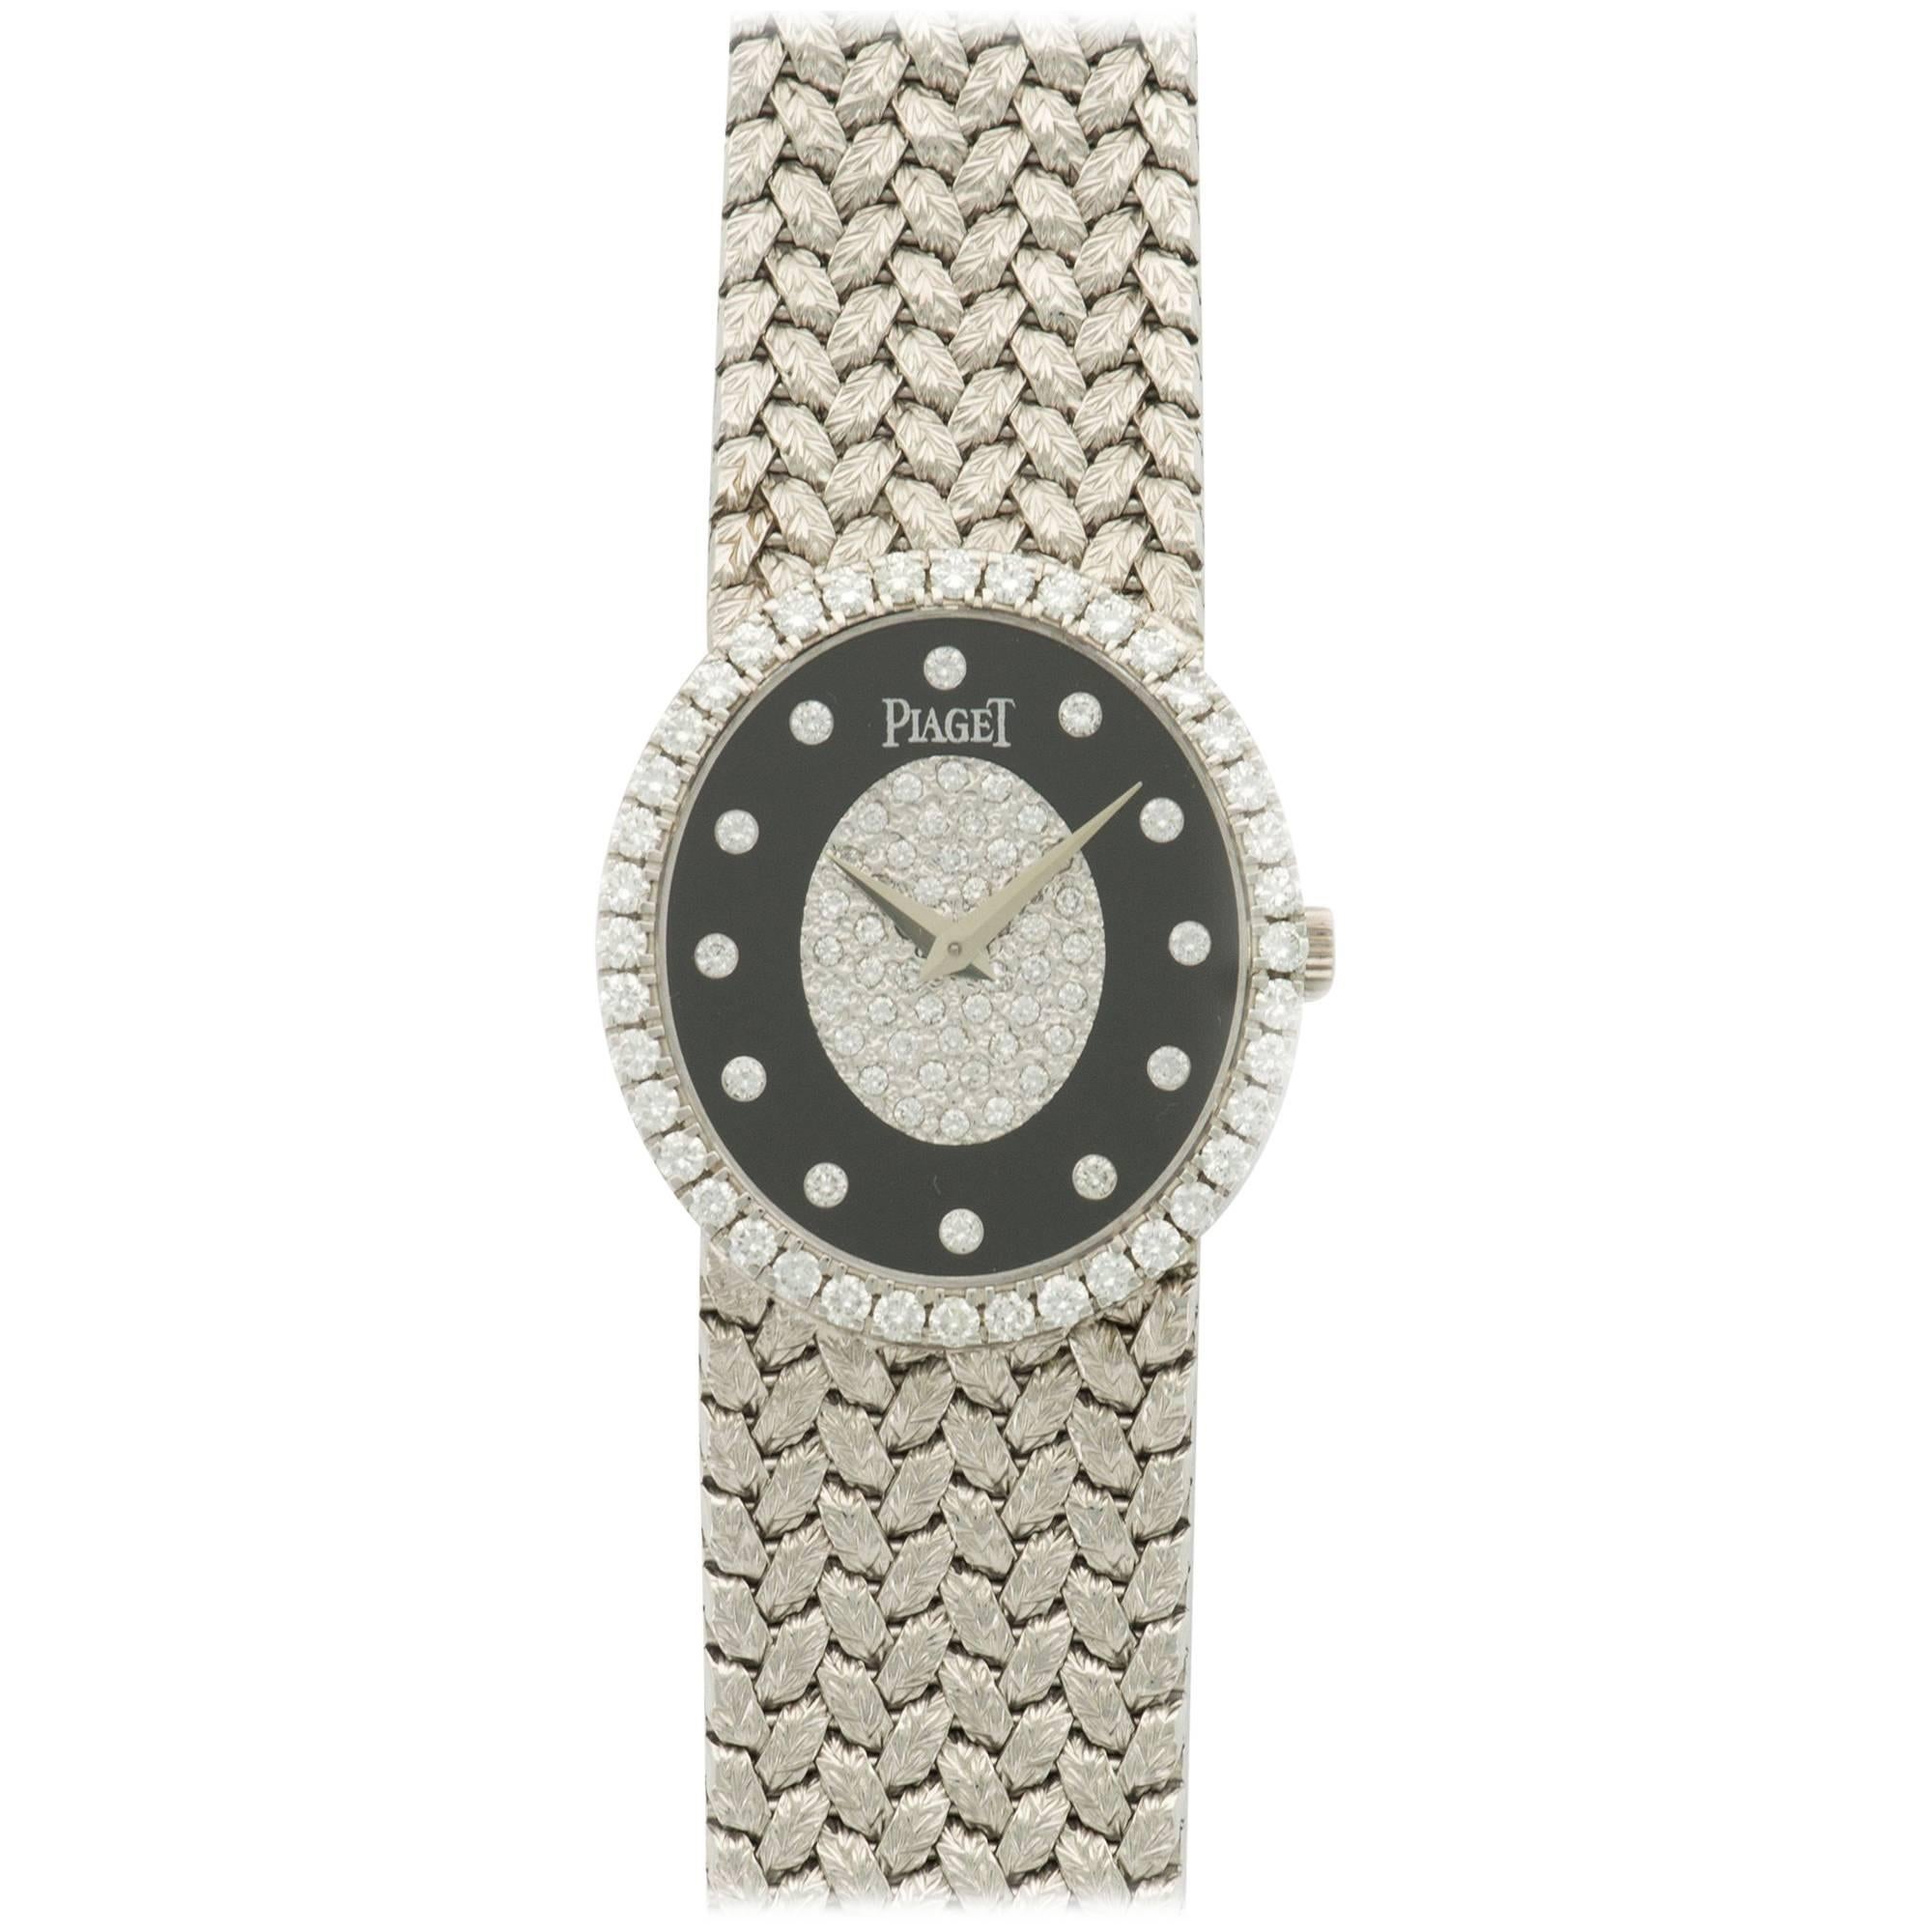 Piaget White Gold Diamond Onyx Bracelet Mechanical Wind Wristwatch Ref 9826 